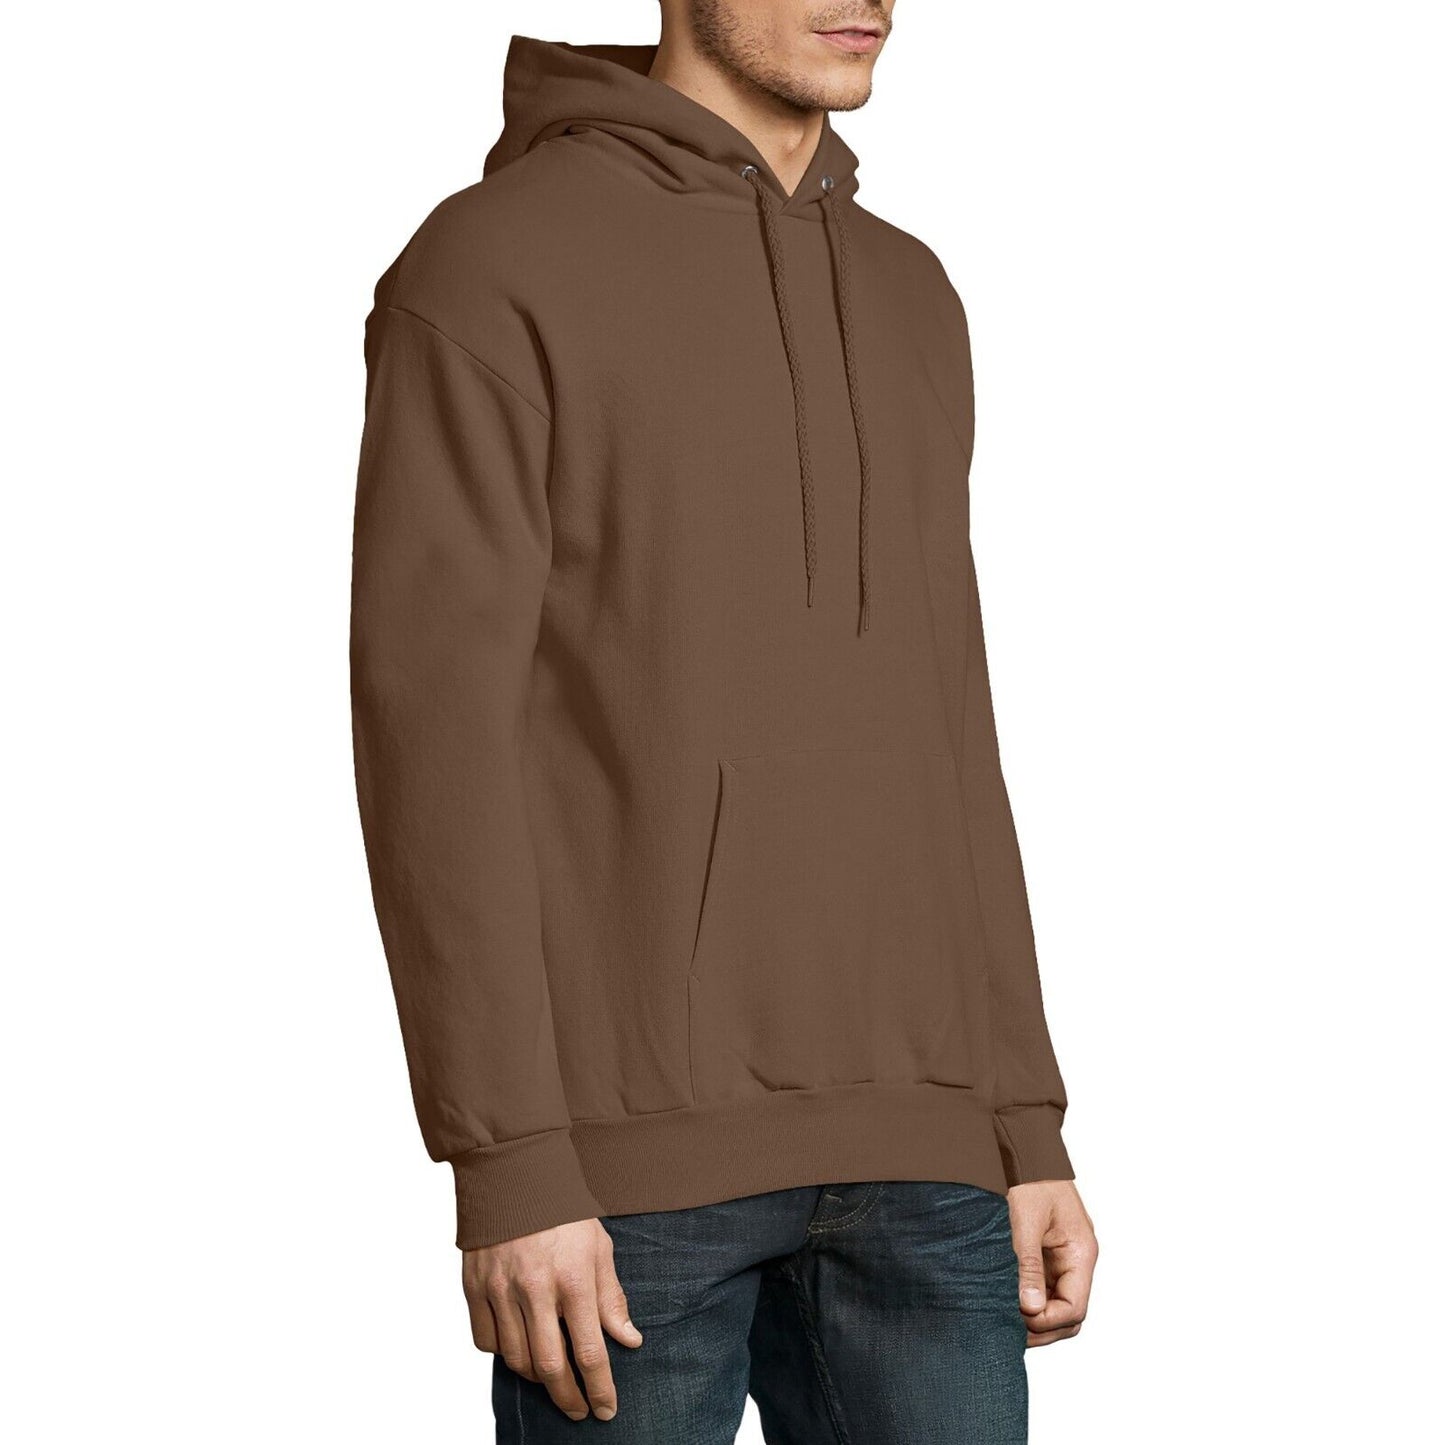 Hanes Men's and Big Men's Ecosmart Fleece Pullover Hoodie Sweatshirt, Size 2XL